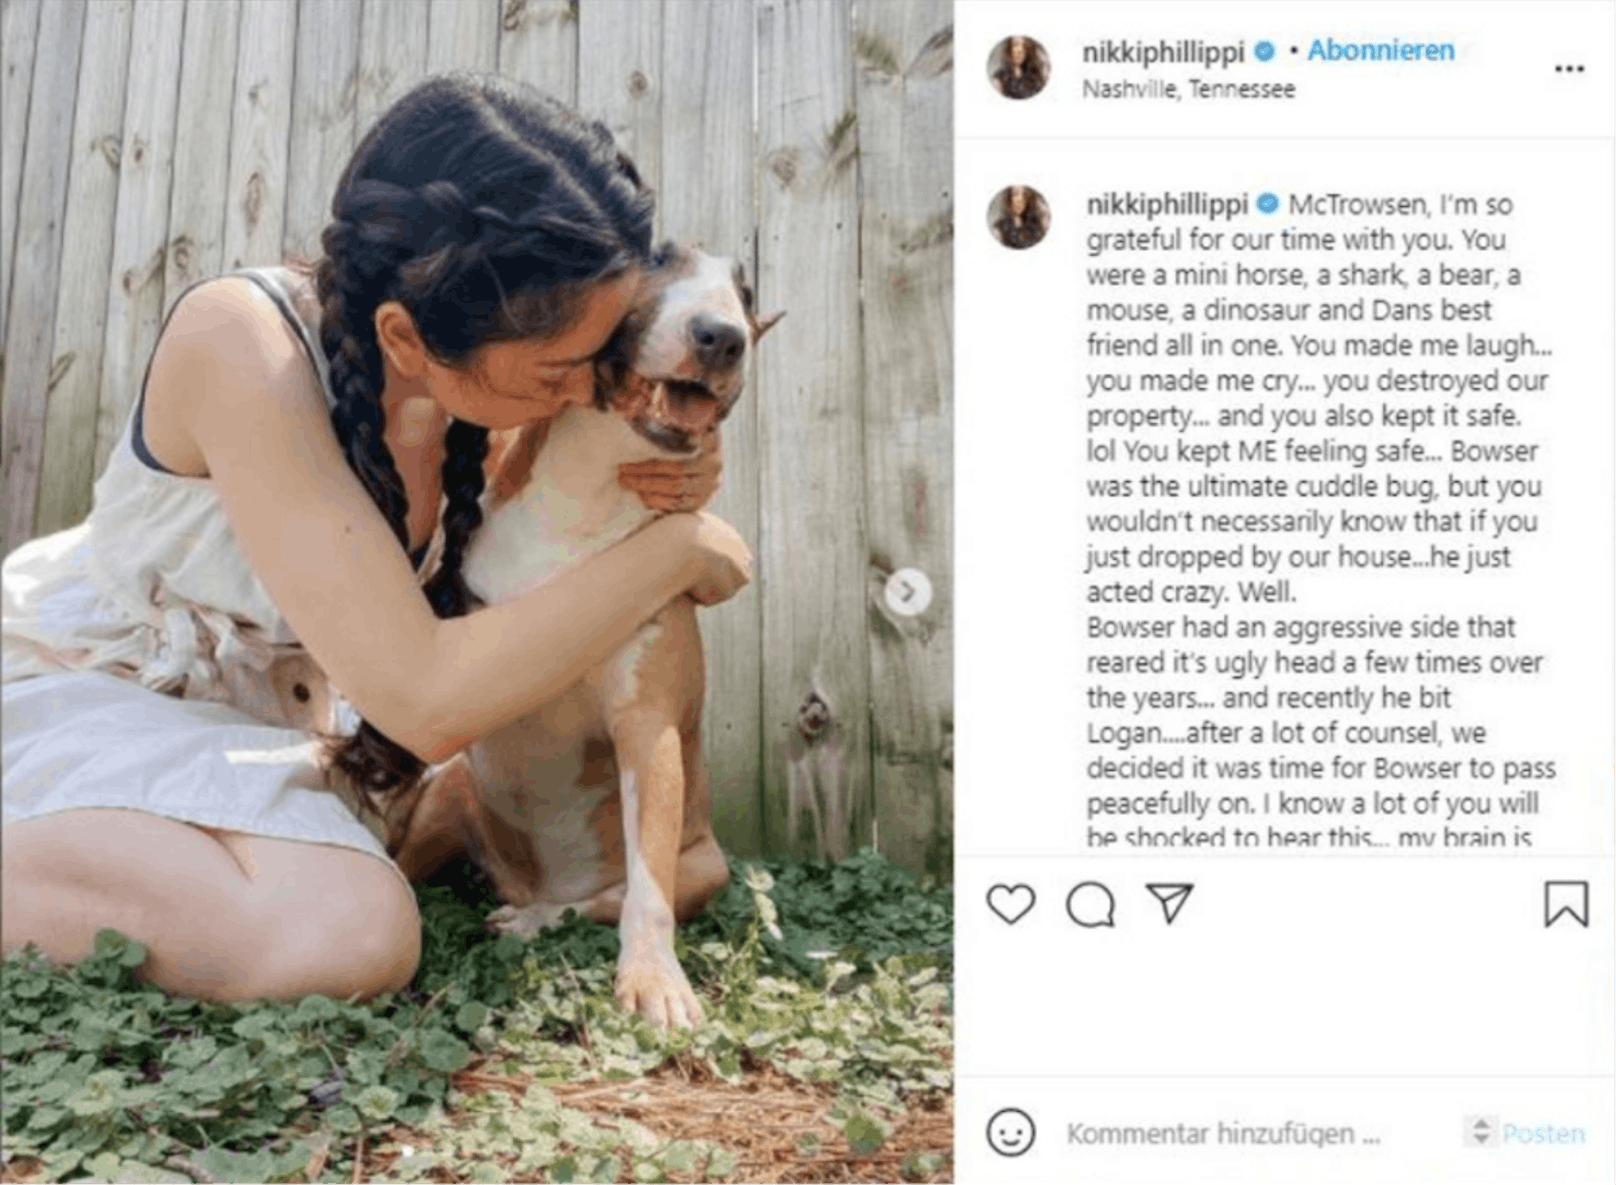 In den sozialen Medien ernten Nikki Phillippi und ihr Mann derzeit viel Kritik. Viele finden es unmoralisch und grausam, dass sie ihren Hund einschläfern ließen, nachdem er ihren einjährigen Sohn gebissen hat.